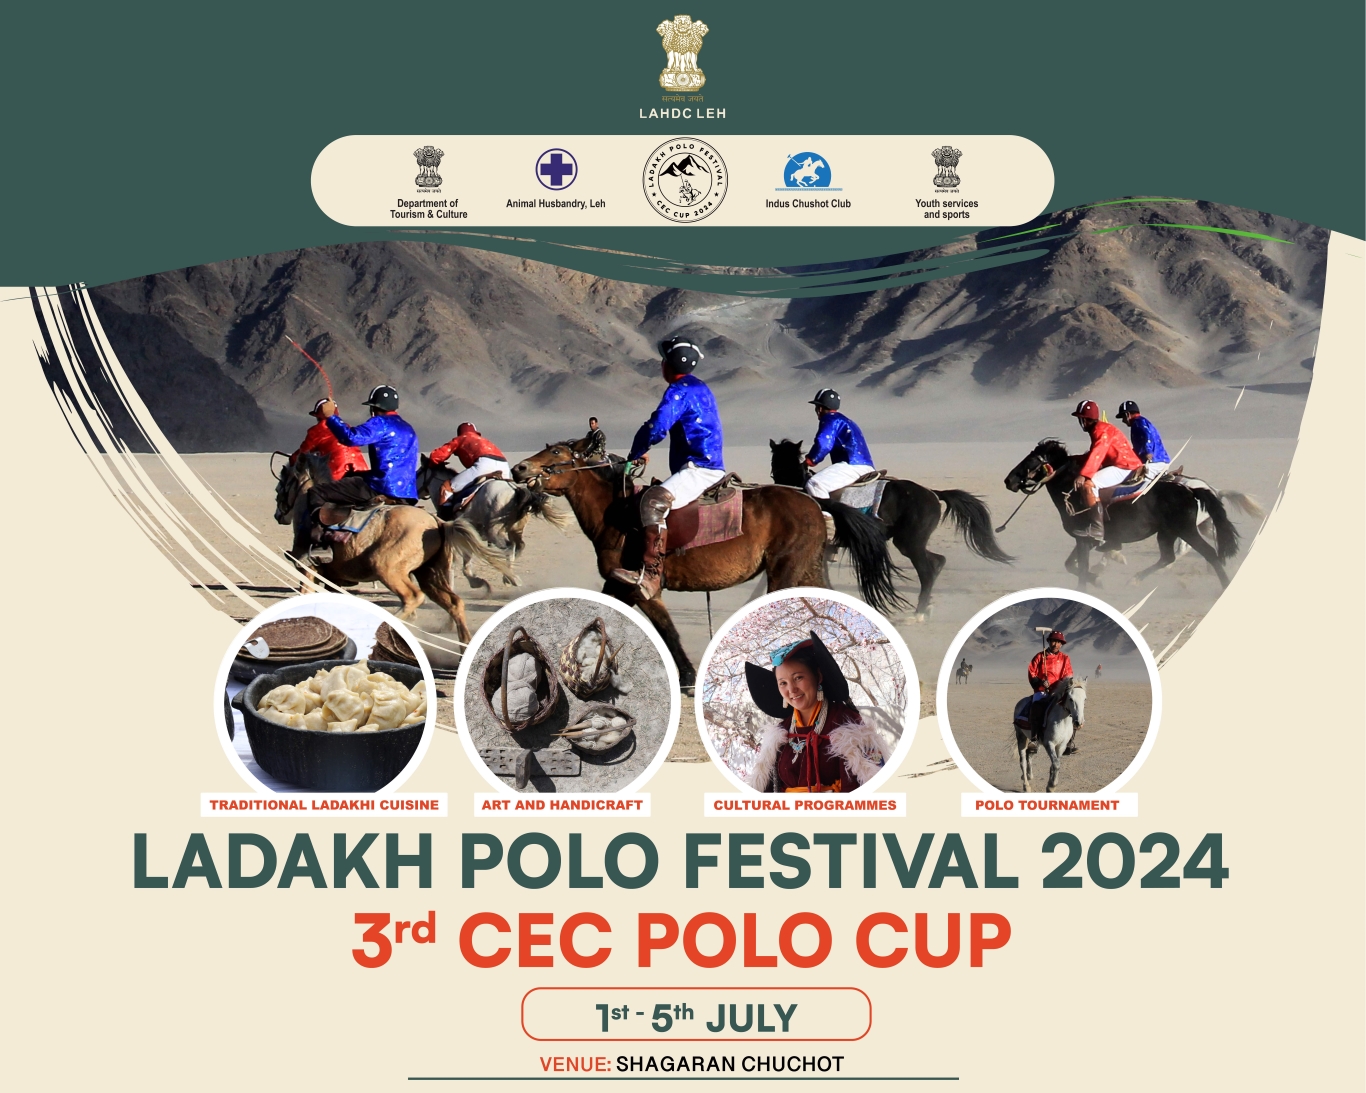 Ladakh Polo Festival 2024: Where Tradition and Sport Collide